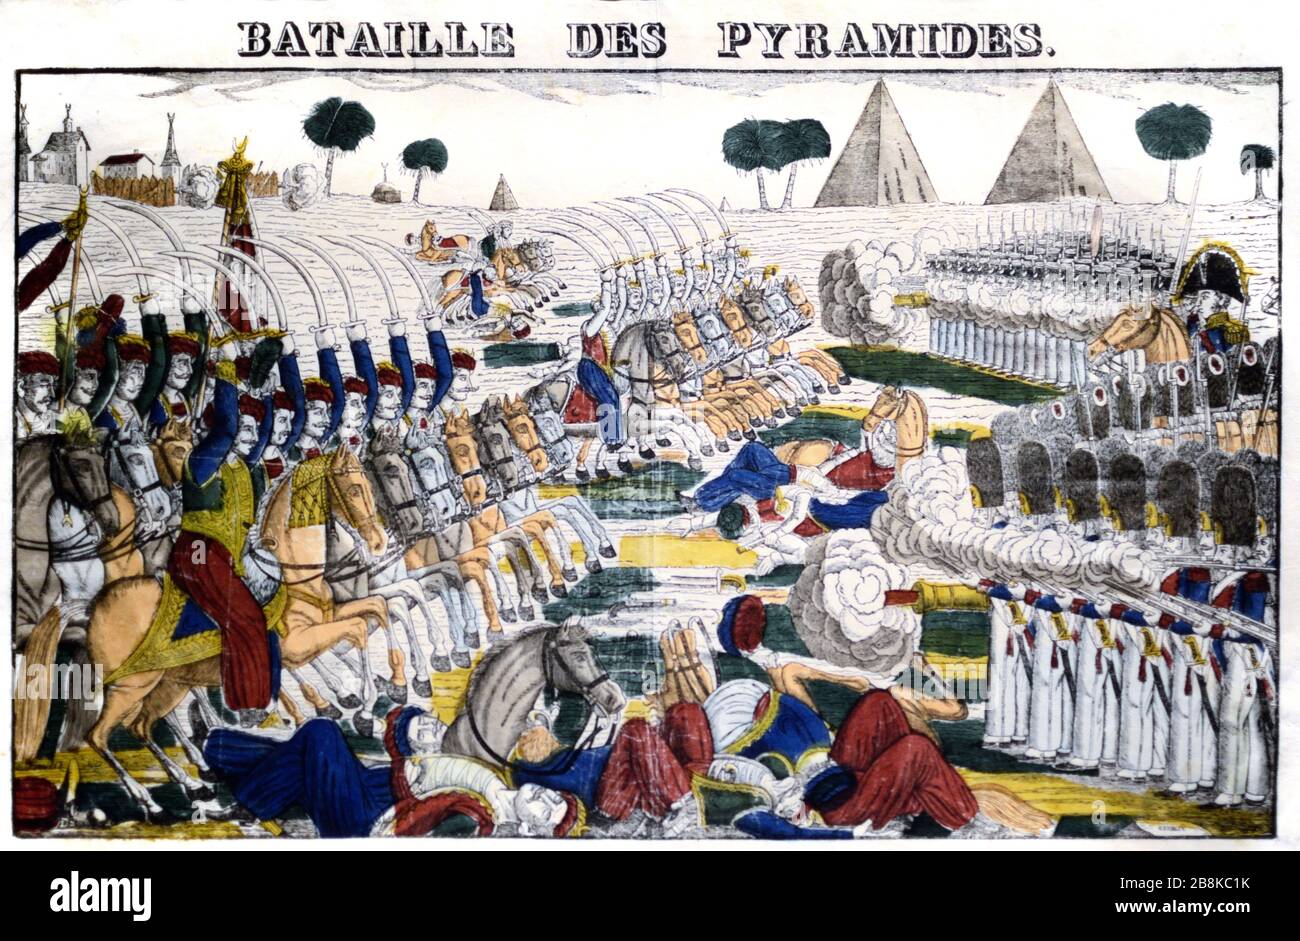 Schlacht der Pyramiden Ägypten (von 1798) alias Schlacht von Embabeh während der französischen Invasion Ägyptens unter Napoleon Bonaparte. Die Schlacht war Teil der französischen Revolutionskriege und war ein entscheidender französischer Sieg gegen die osmanische Armee. c 19. Gravur. Stockfoto